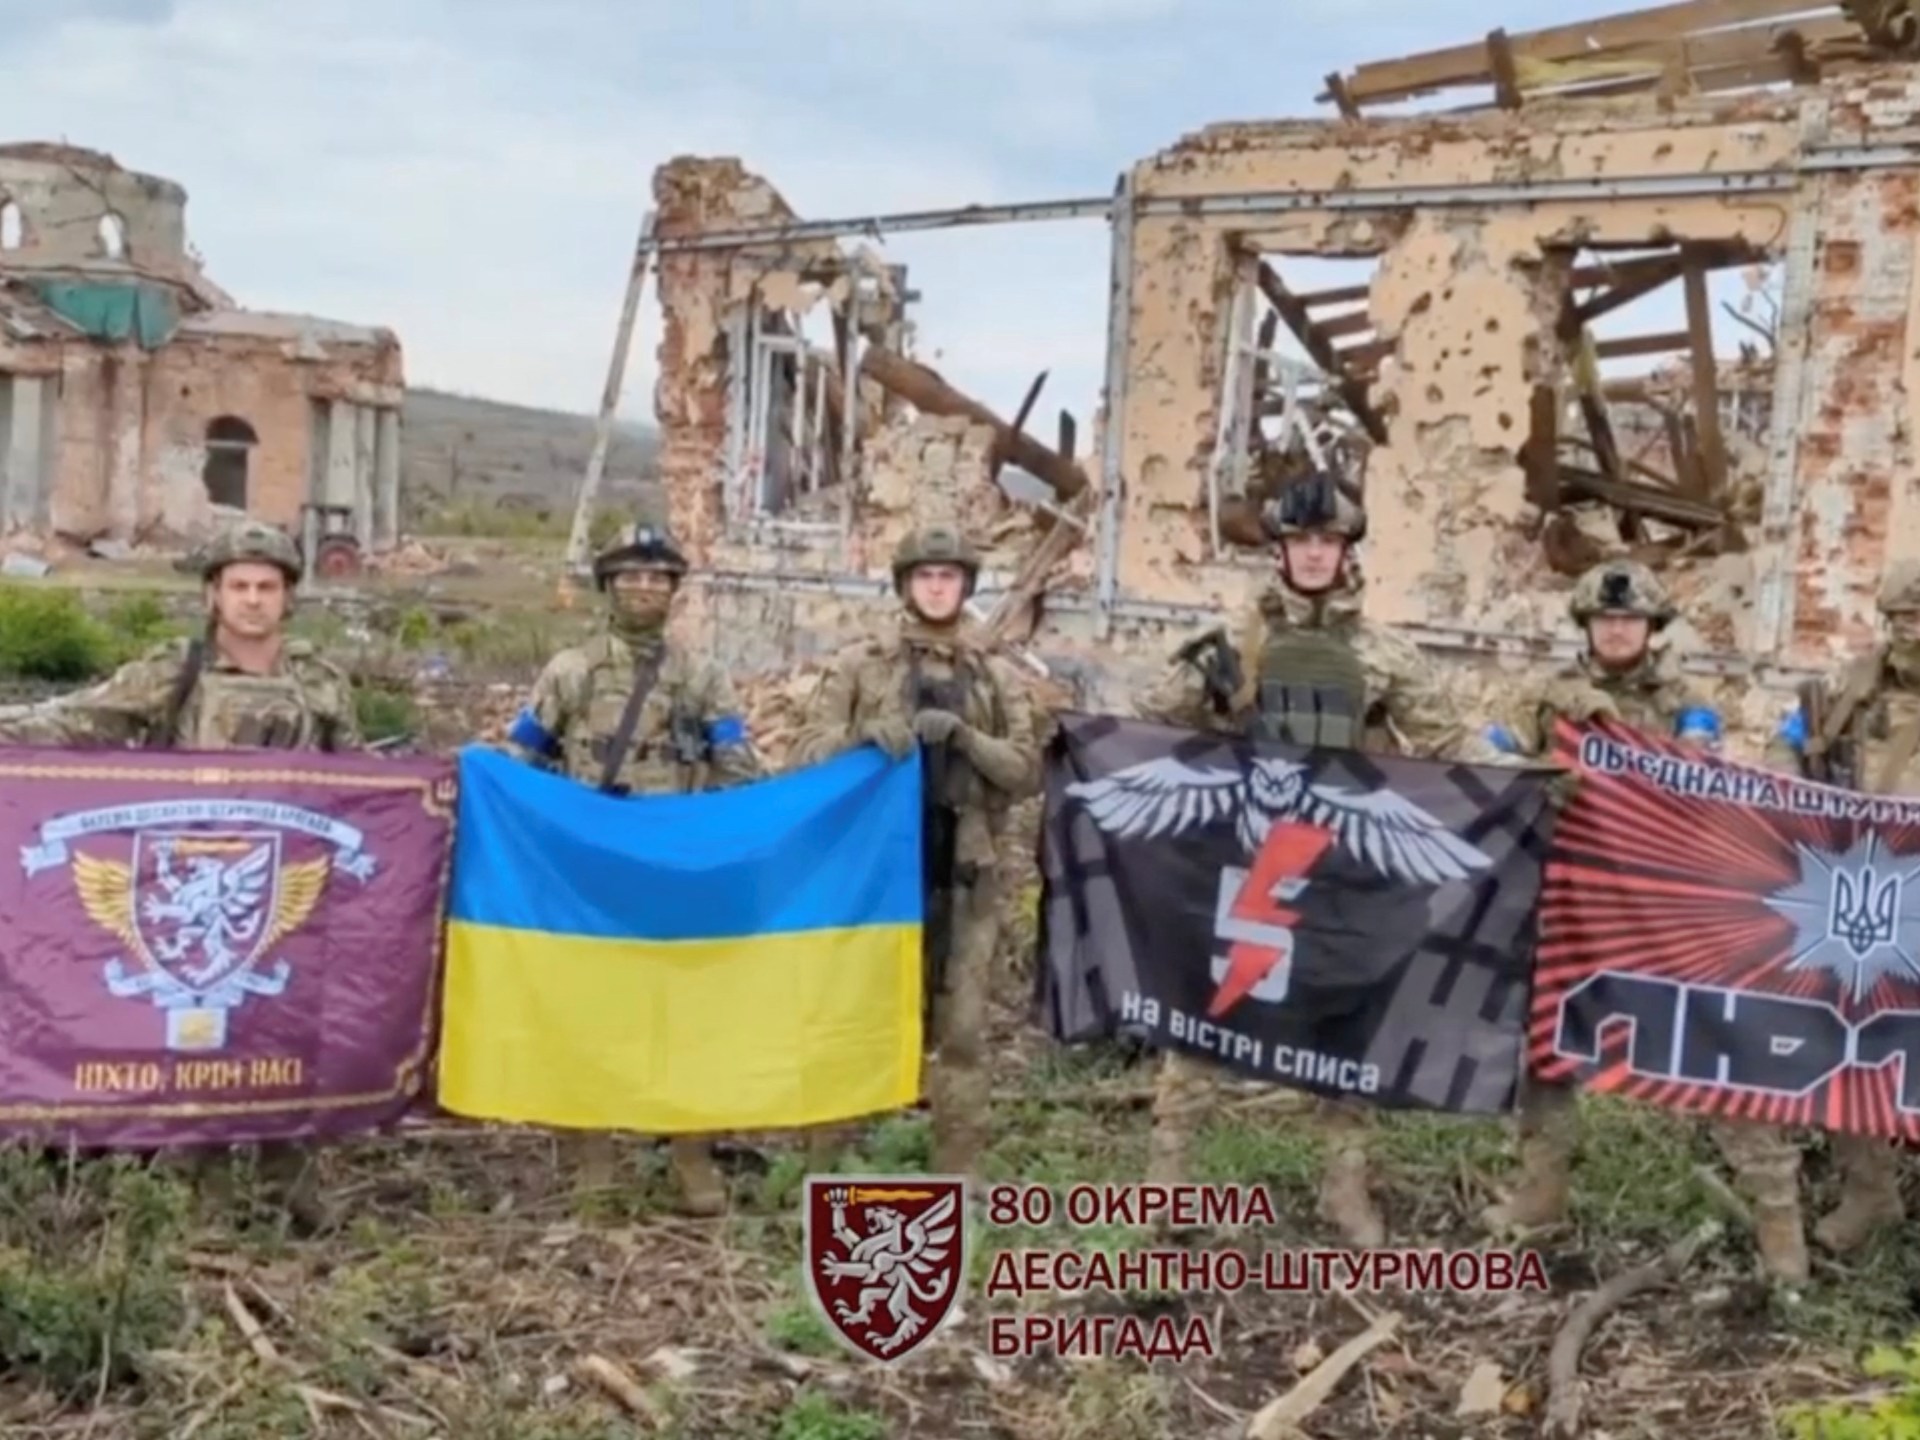 L’Ucraina riconquista Klyshchevka, il secondo villaggio orientale in tre giorni  Notizie sulla guerra russo-ucraina